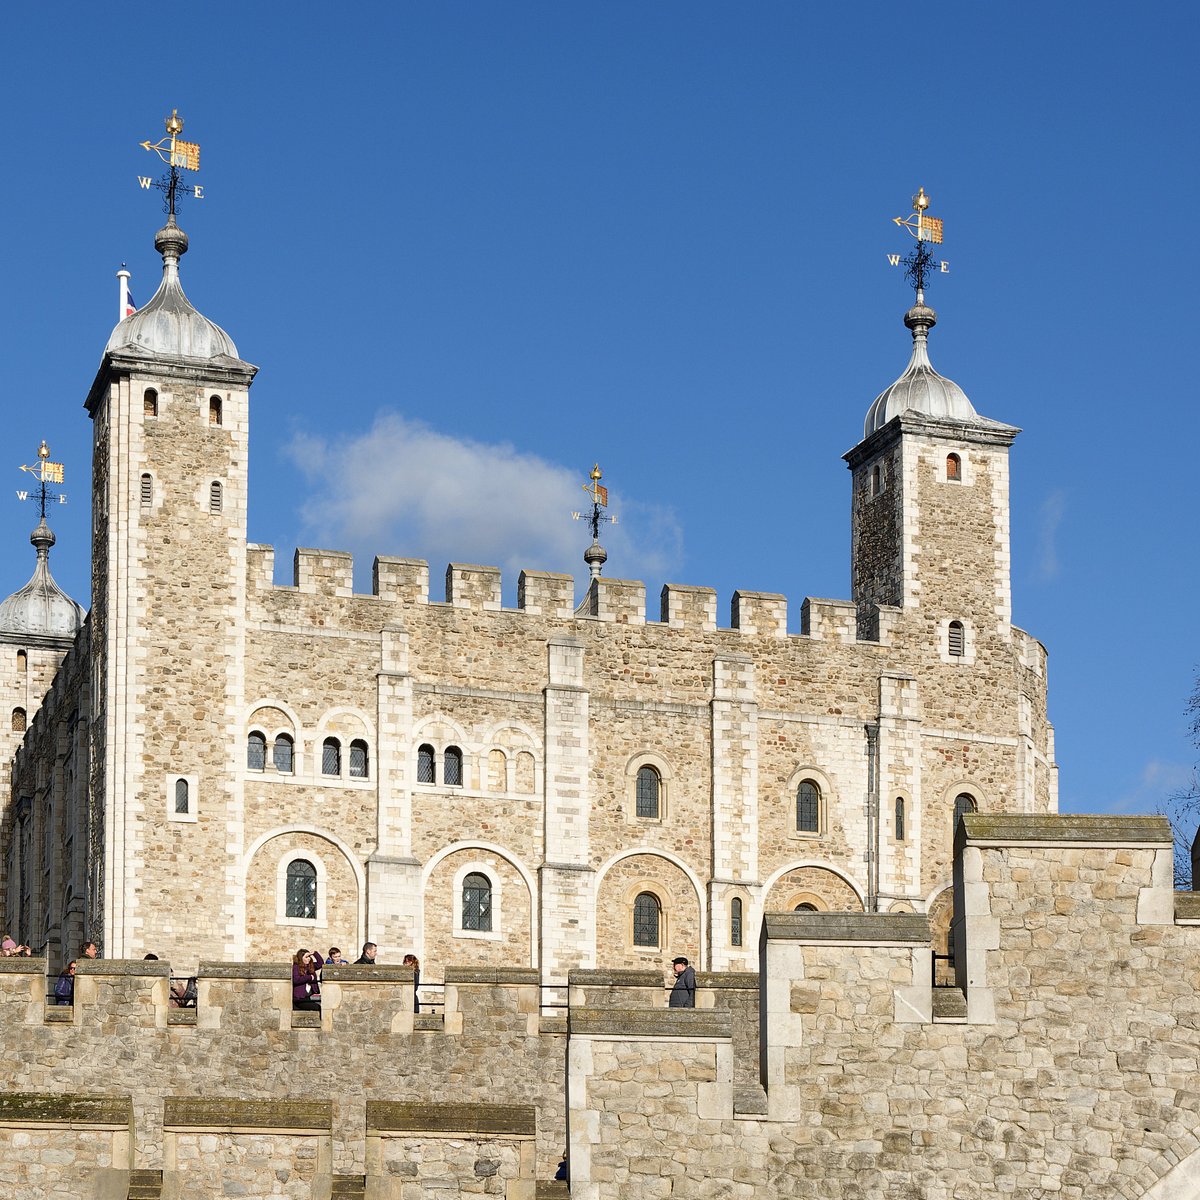 Tower of London (Londen) 2023 Alles wat u moet weten VOORDAT je gaat